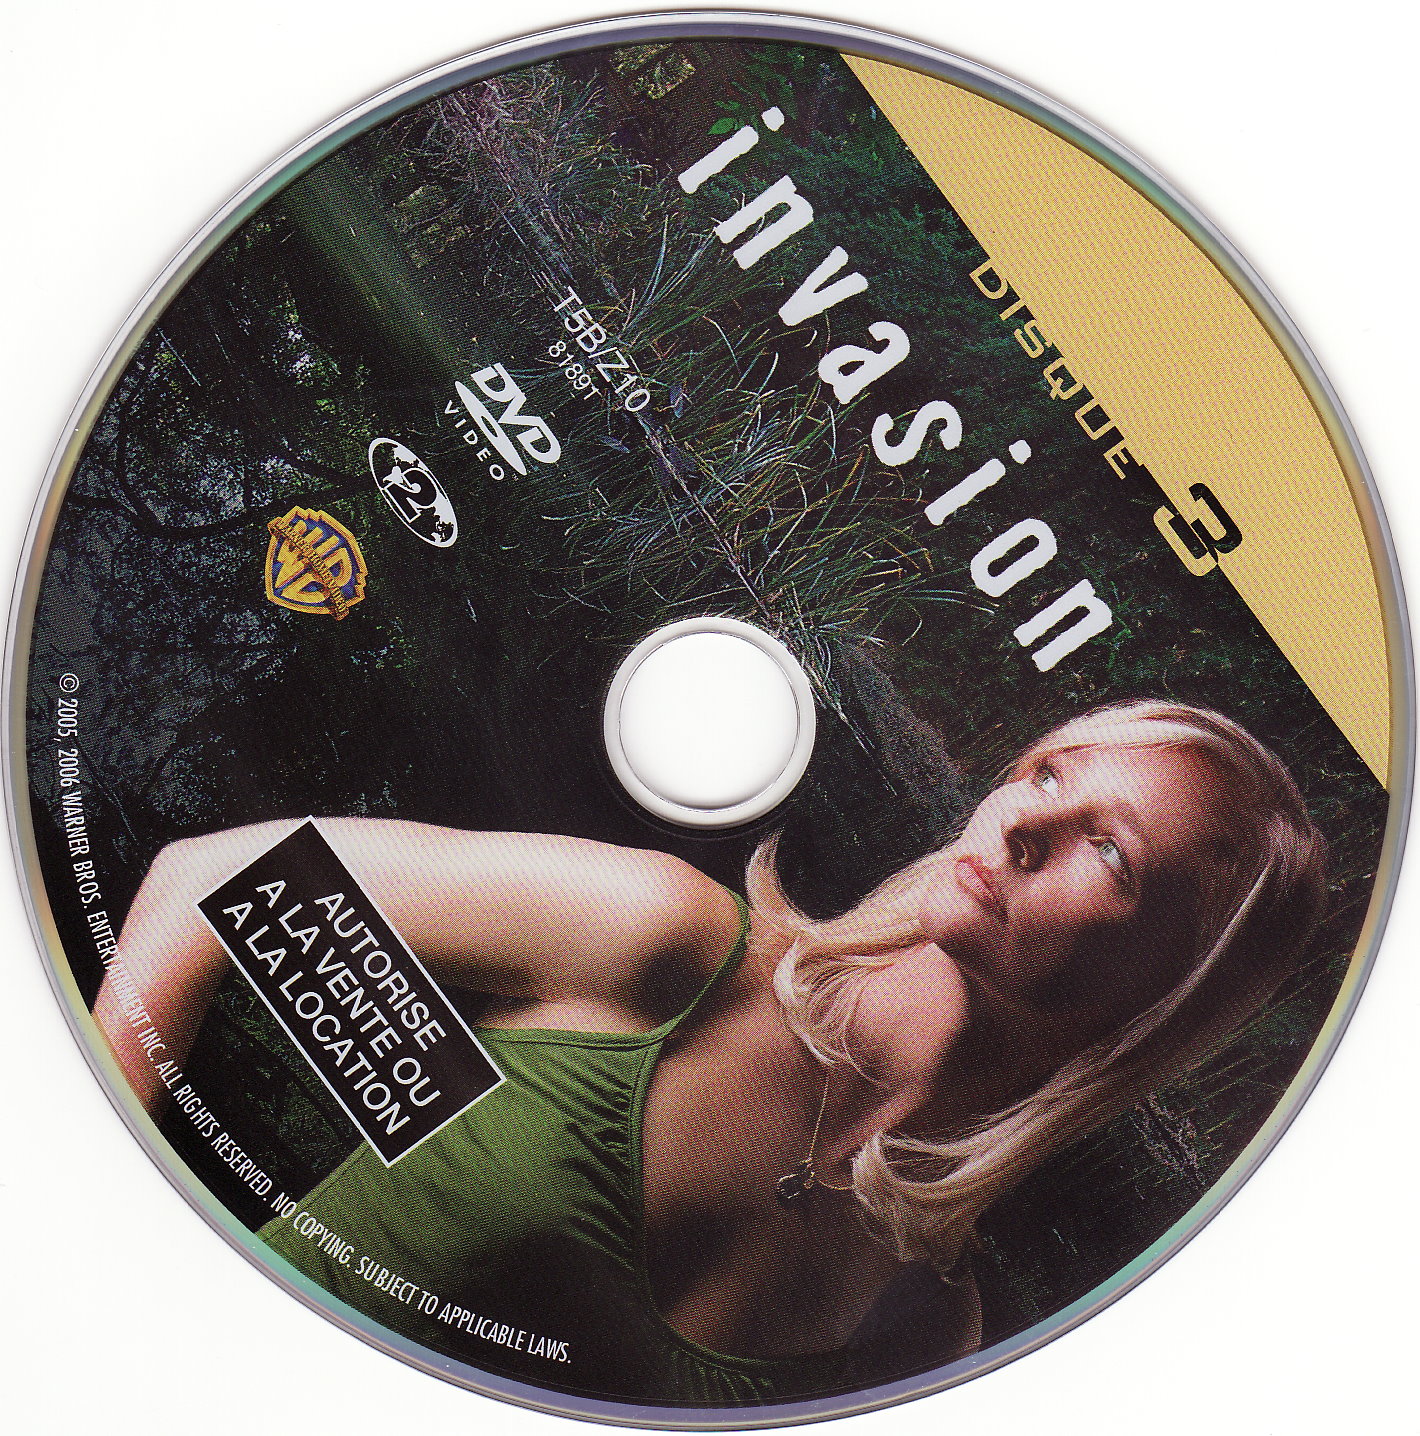 Invasion DVD 3